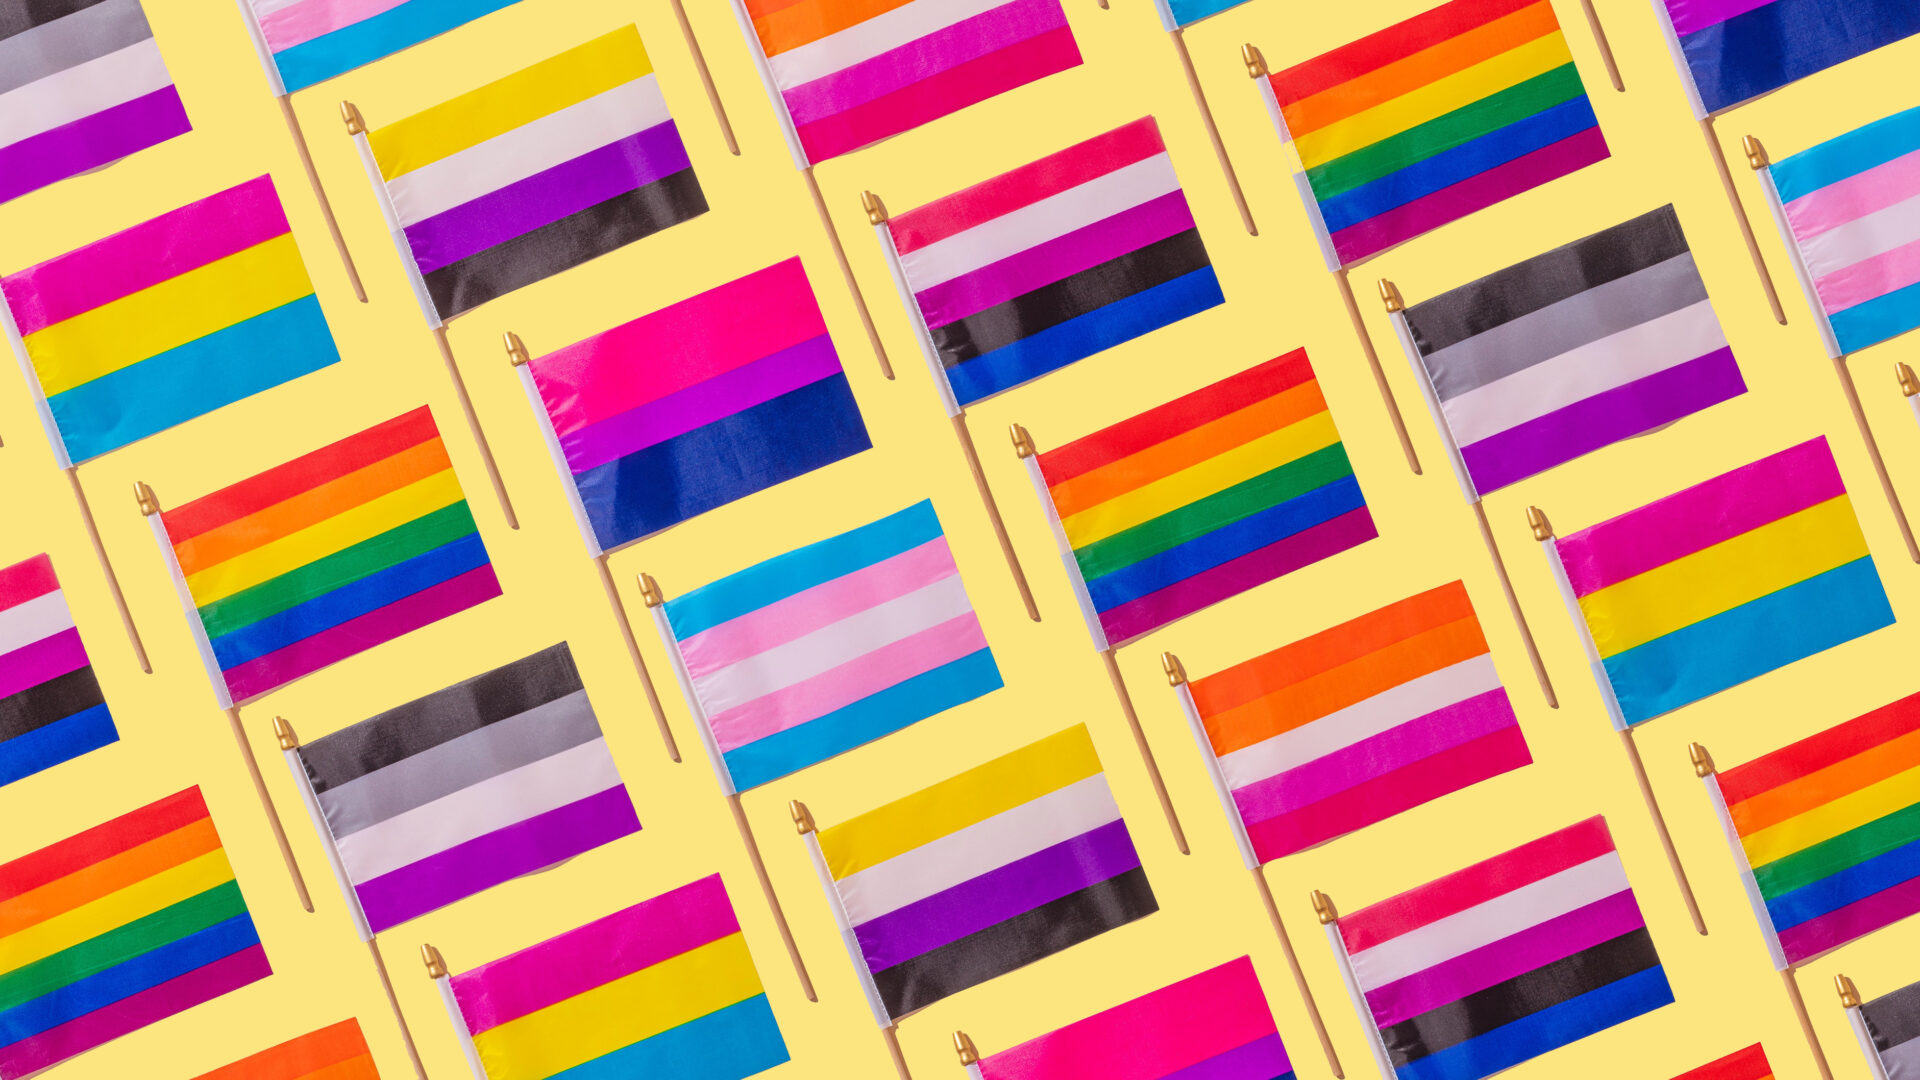 Drapeaux LGBT : Guide & Signification des Drapeaux de la Gay Pride